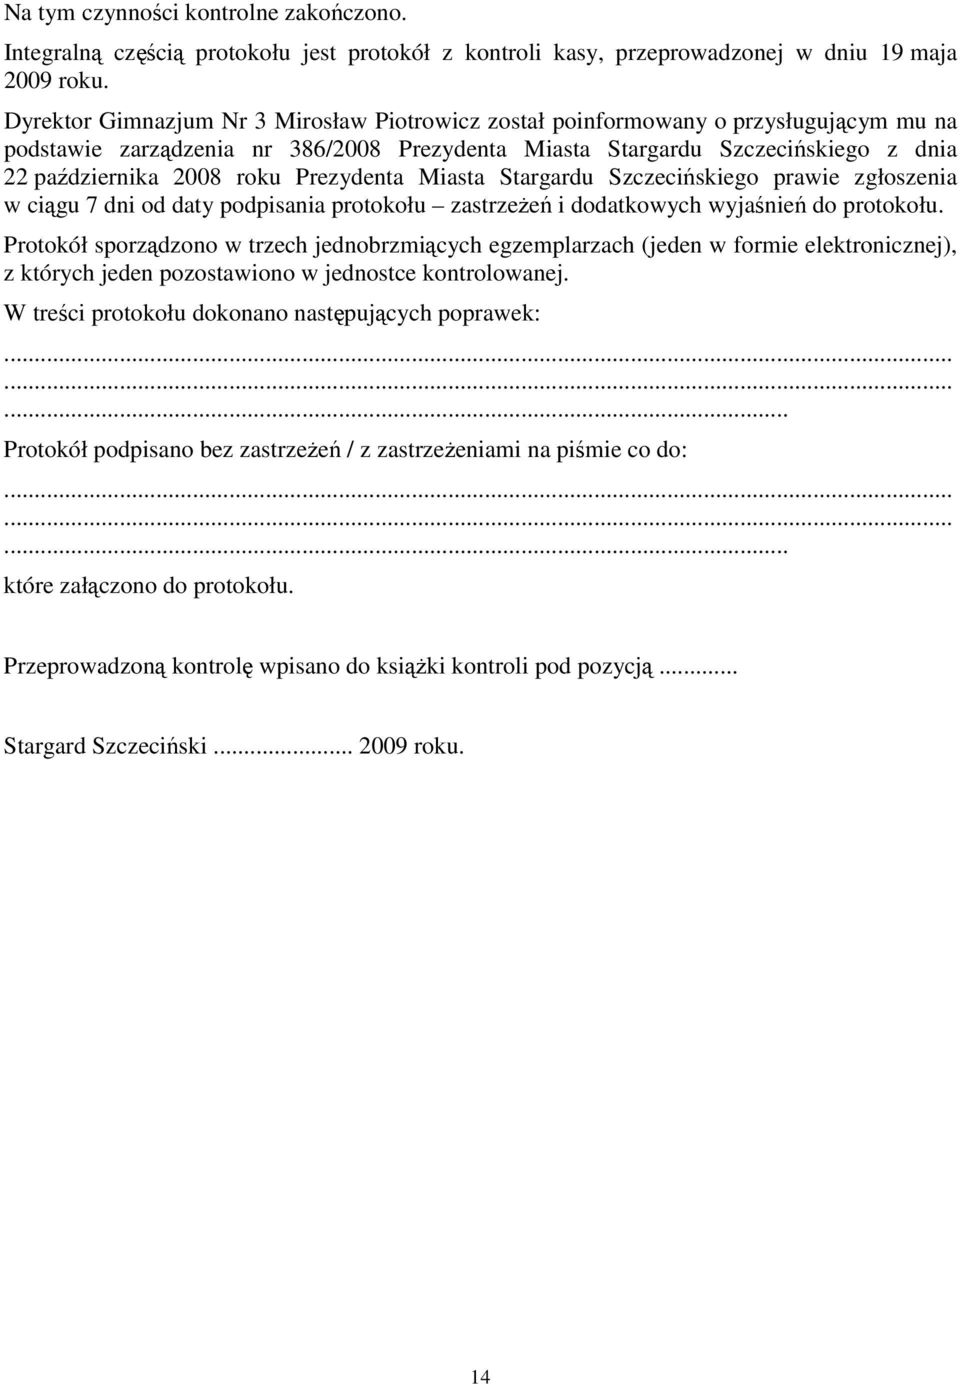 Prezydenta Miasta Stargardu Szczecińskiego prawie zgłoszenia w ciągu 7 dni od daty podpisania protokołu zastrzeŝeń i dodatkowych wyjaśnień do protokołu.